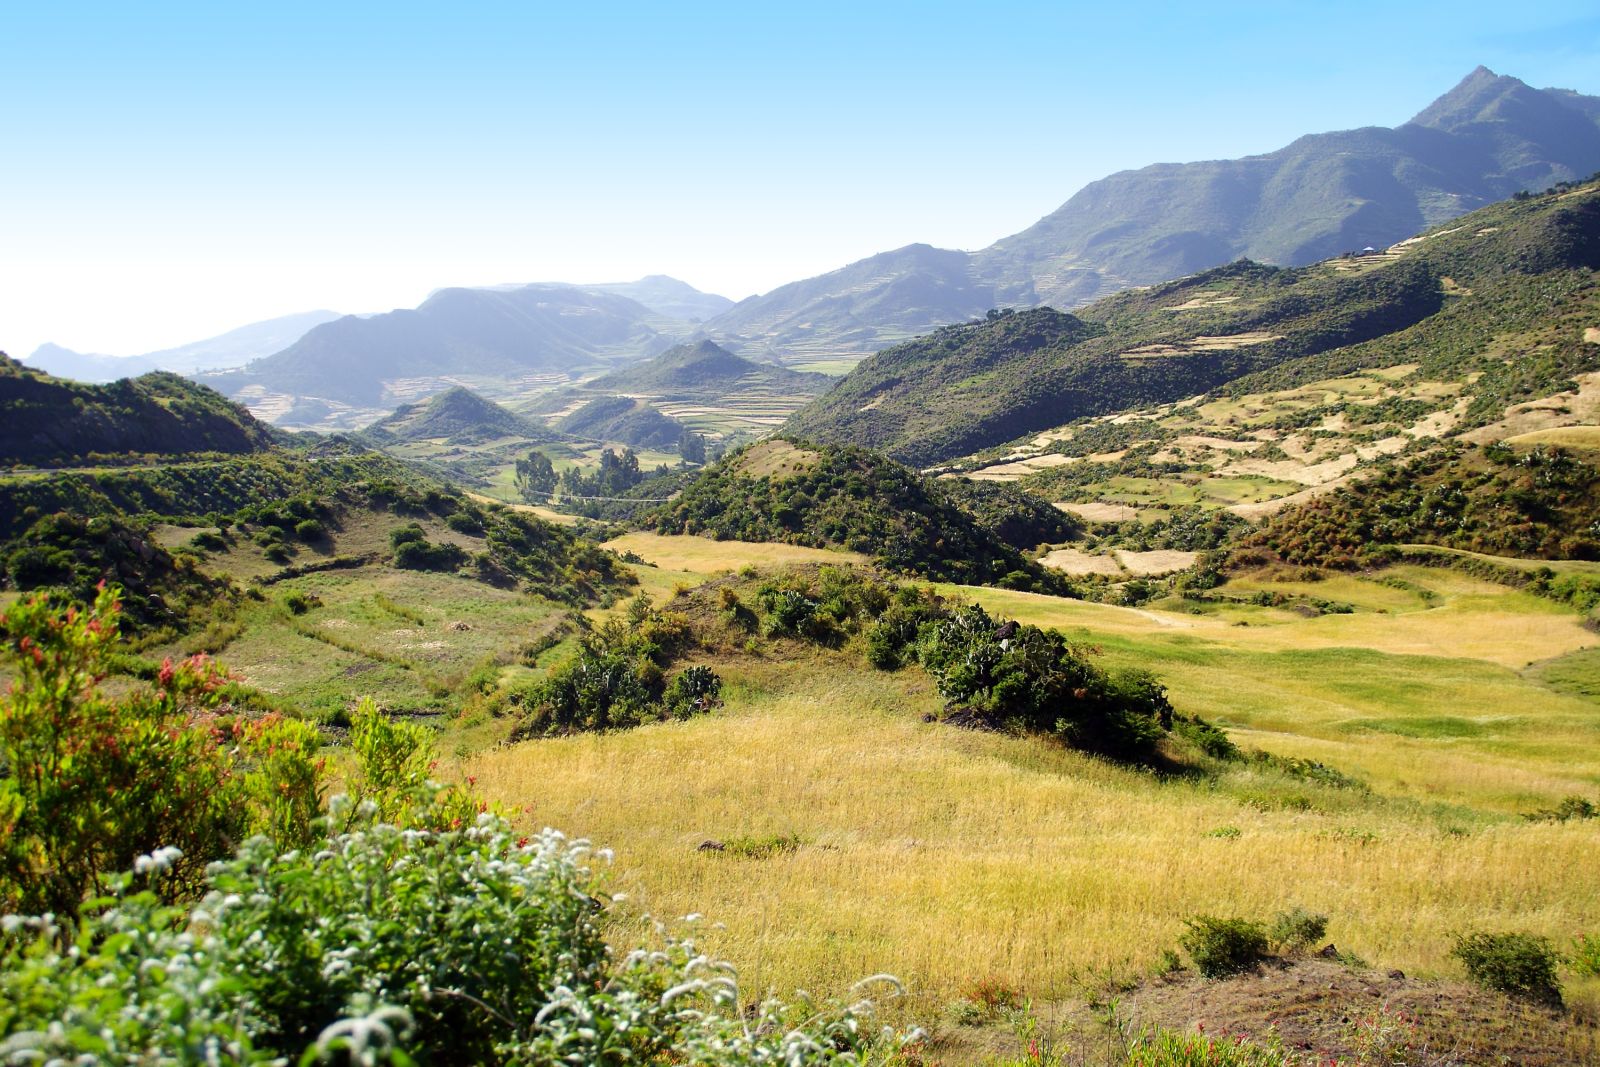 Landschafts- und Bergszenerie in Nordäthiopien